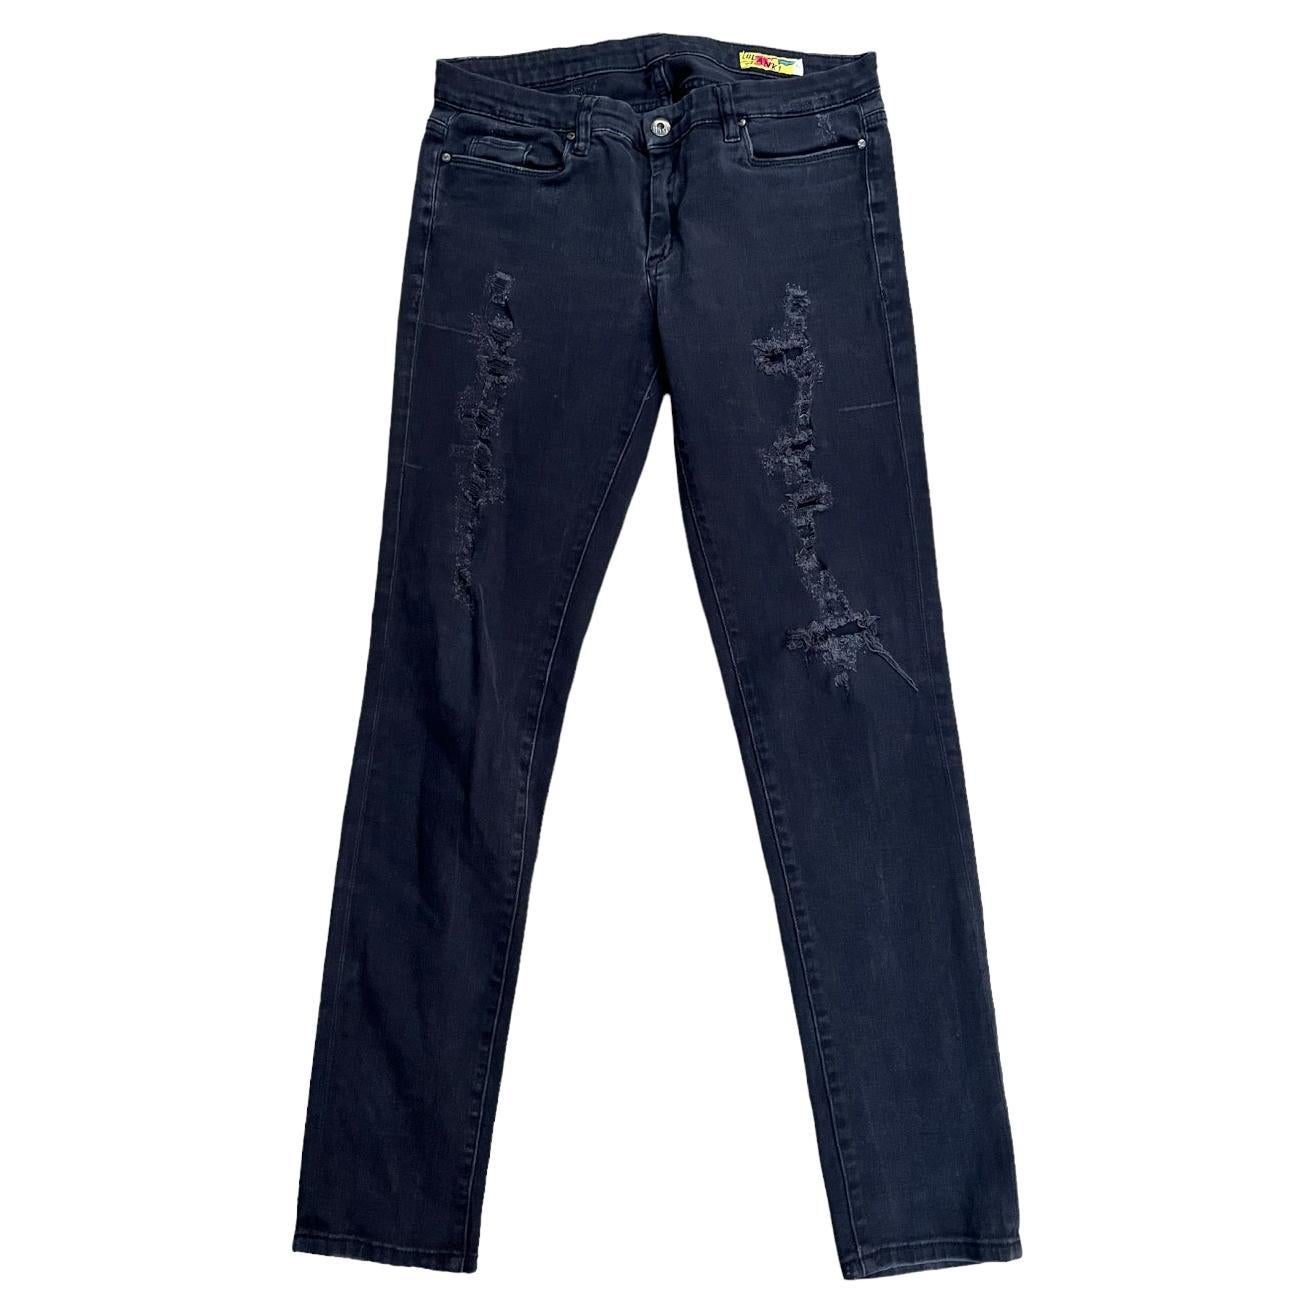 Blanki Black Denim Jeans, Size 31 For Sale